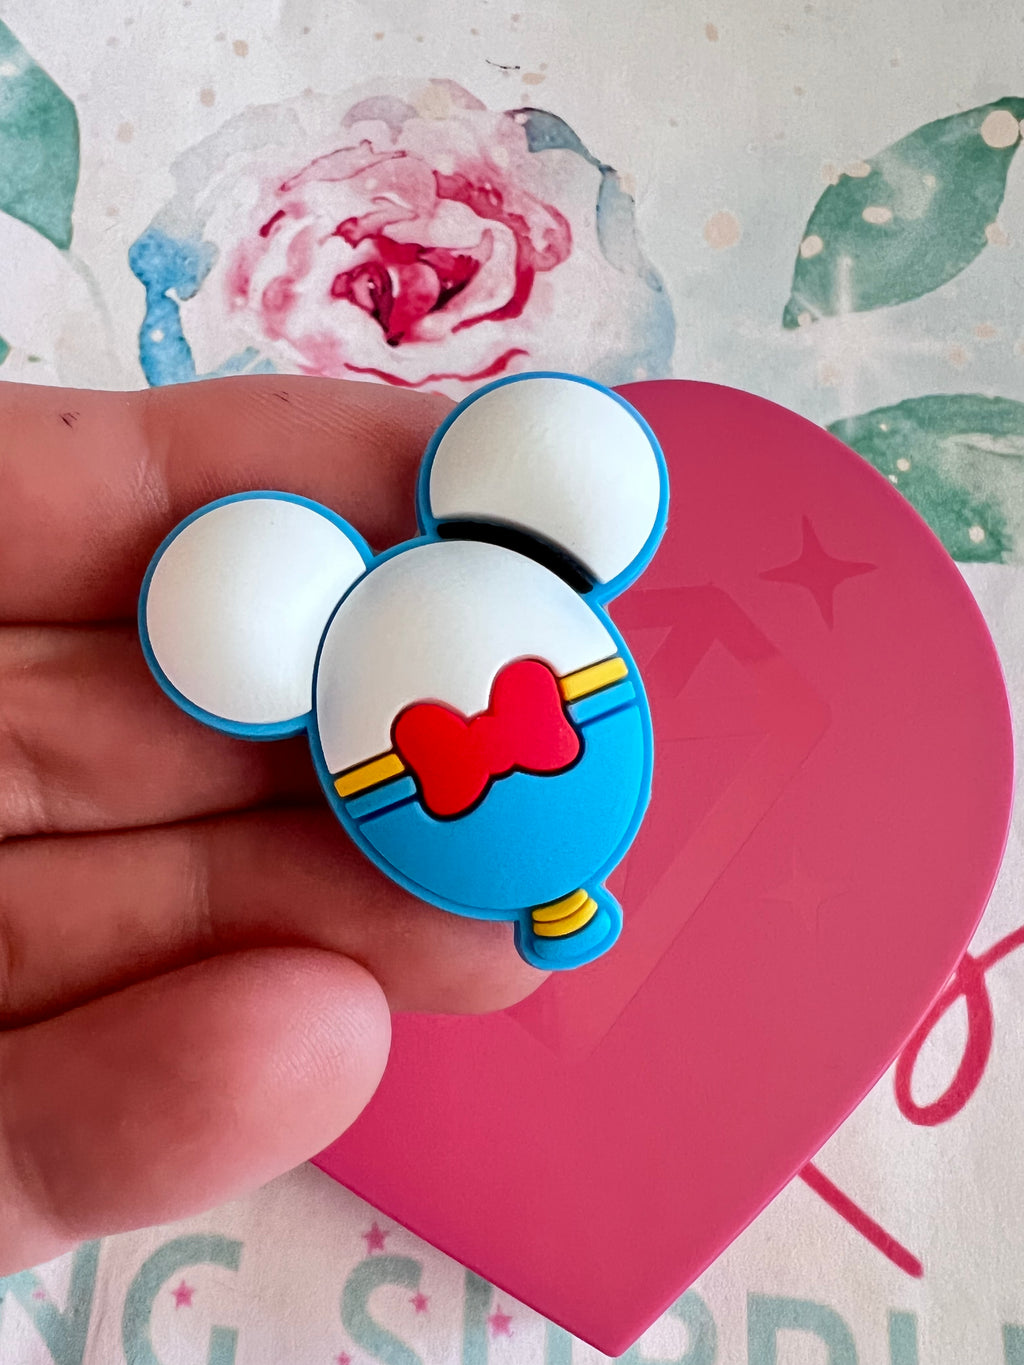 Blue/ white mouse balloon charm